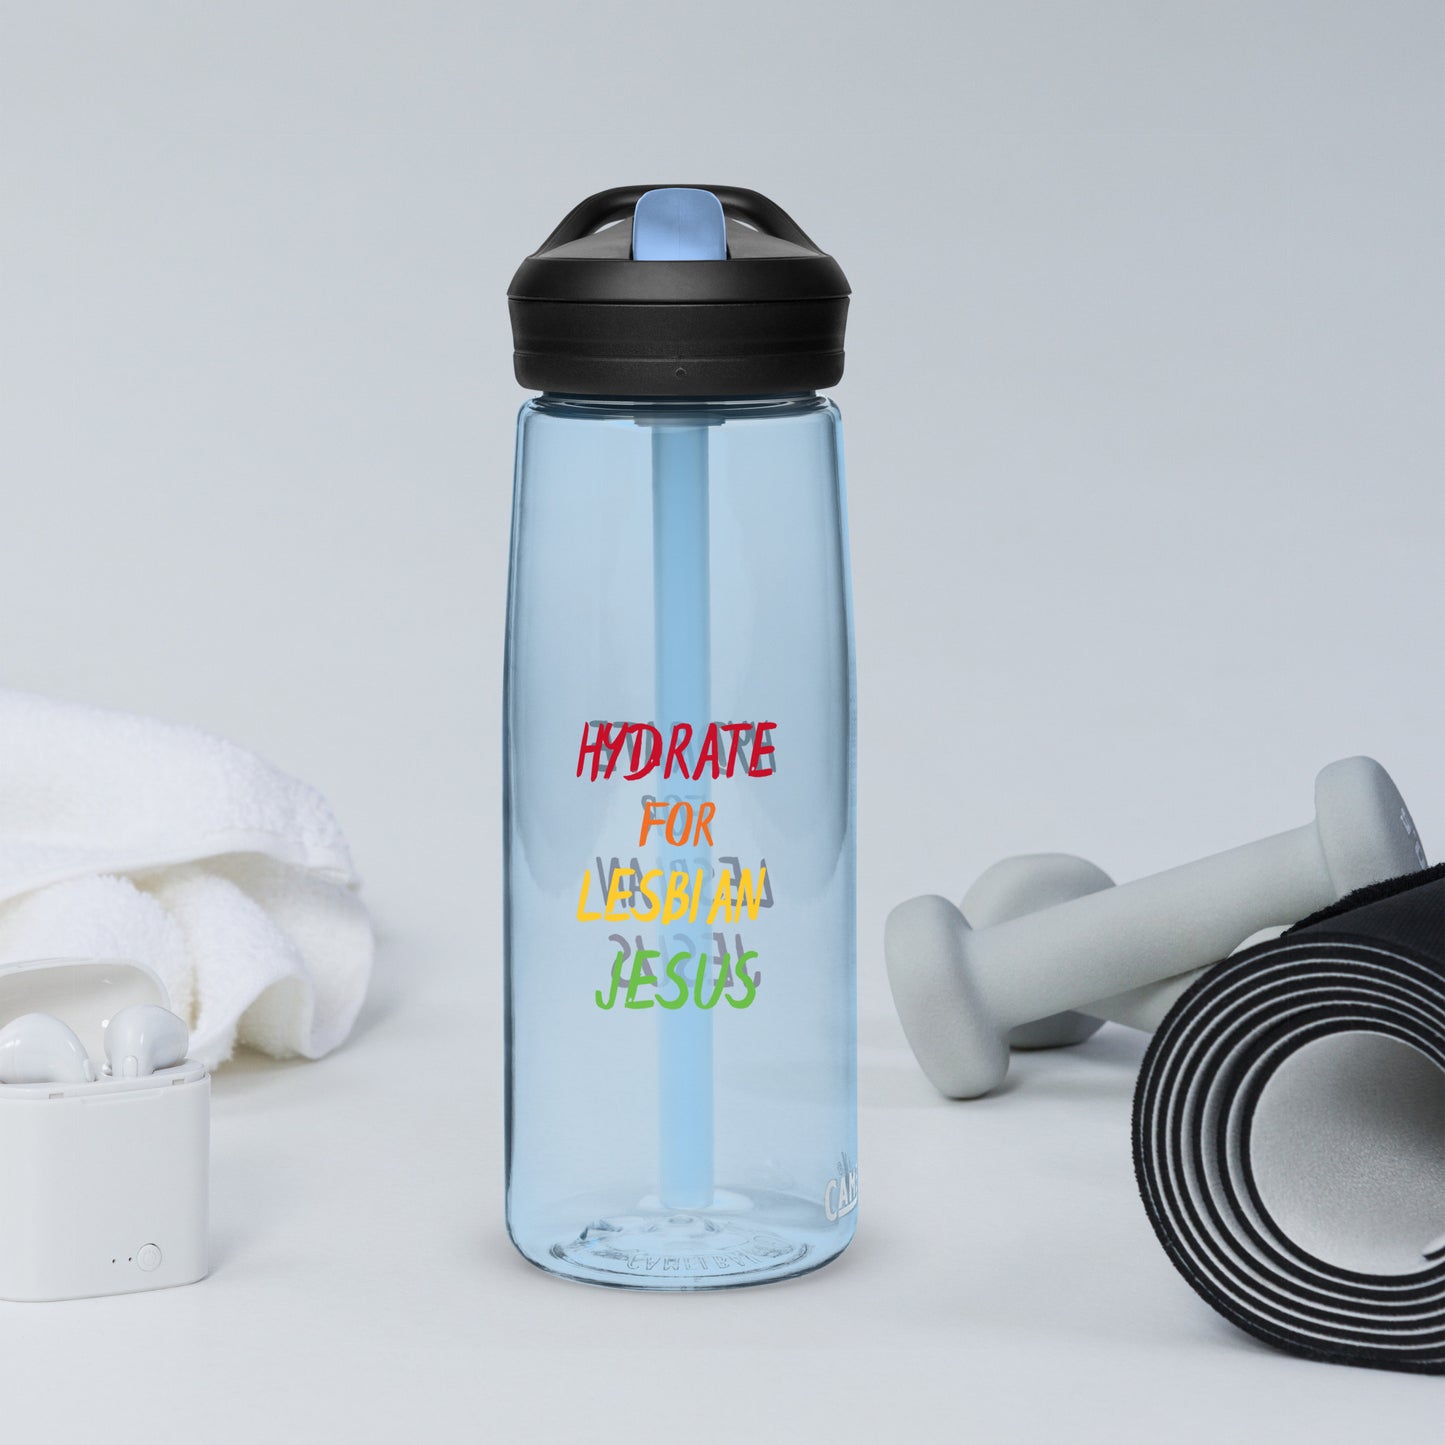 Hydrate For Lesbian Jesus Sports water bottle